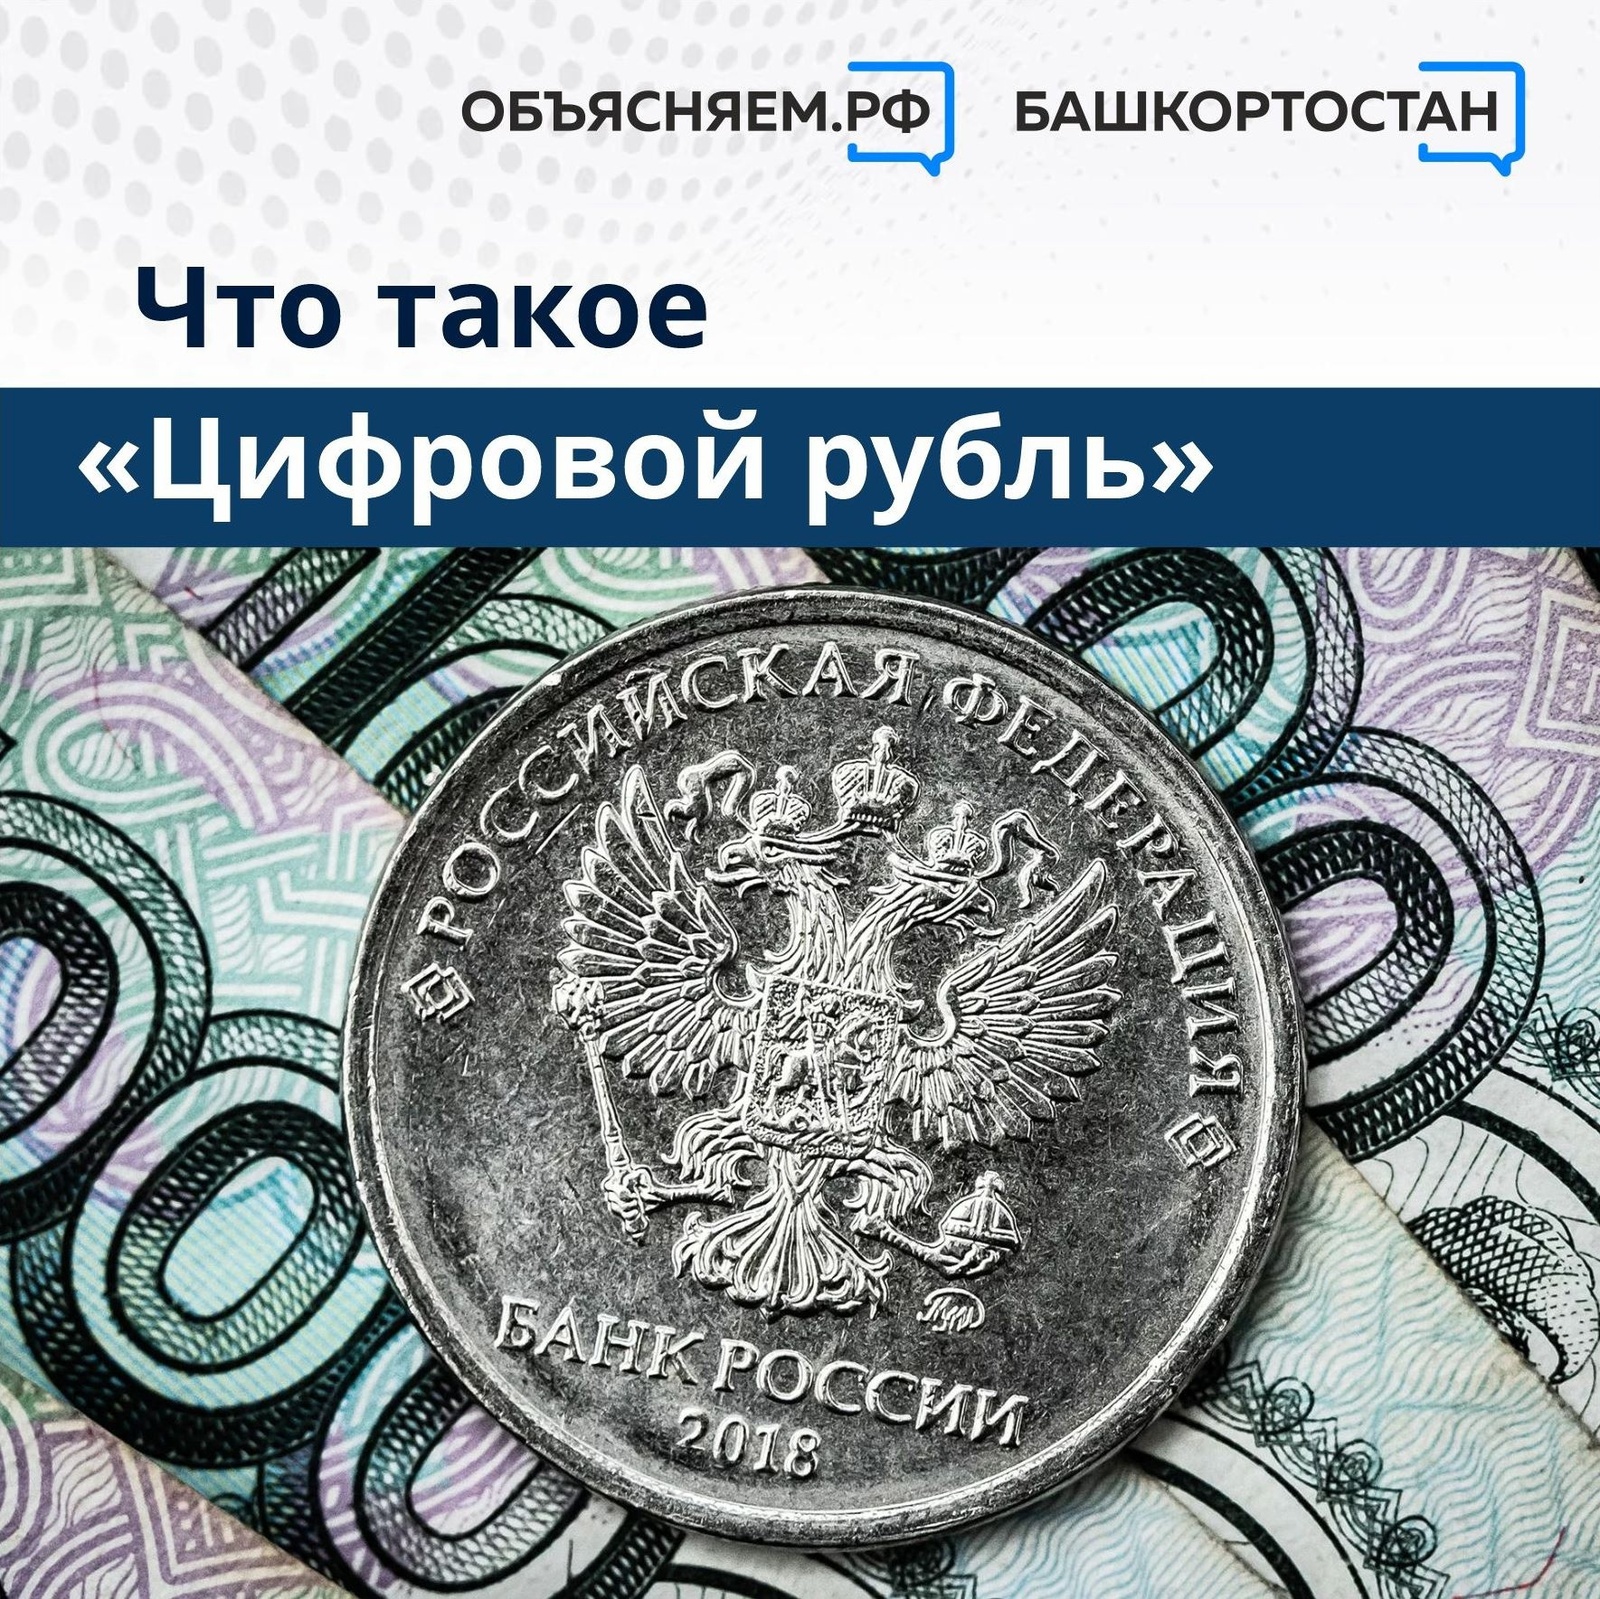 Специалисты Отделения-Национального банка по Республике Башкортостан Банка России объяснили, что такое "Цифровой рубль"